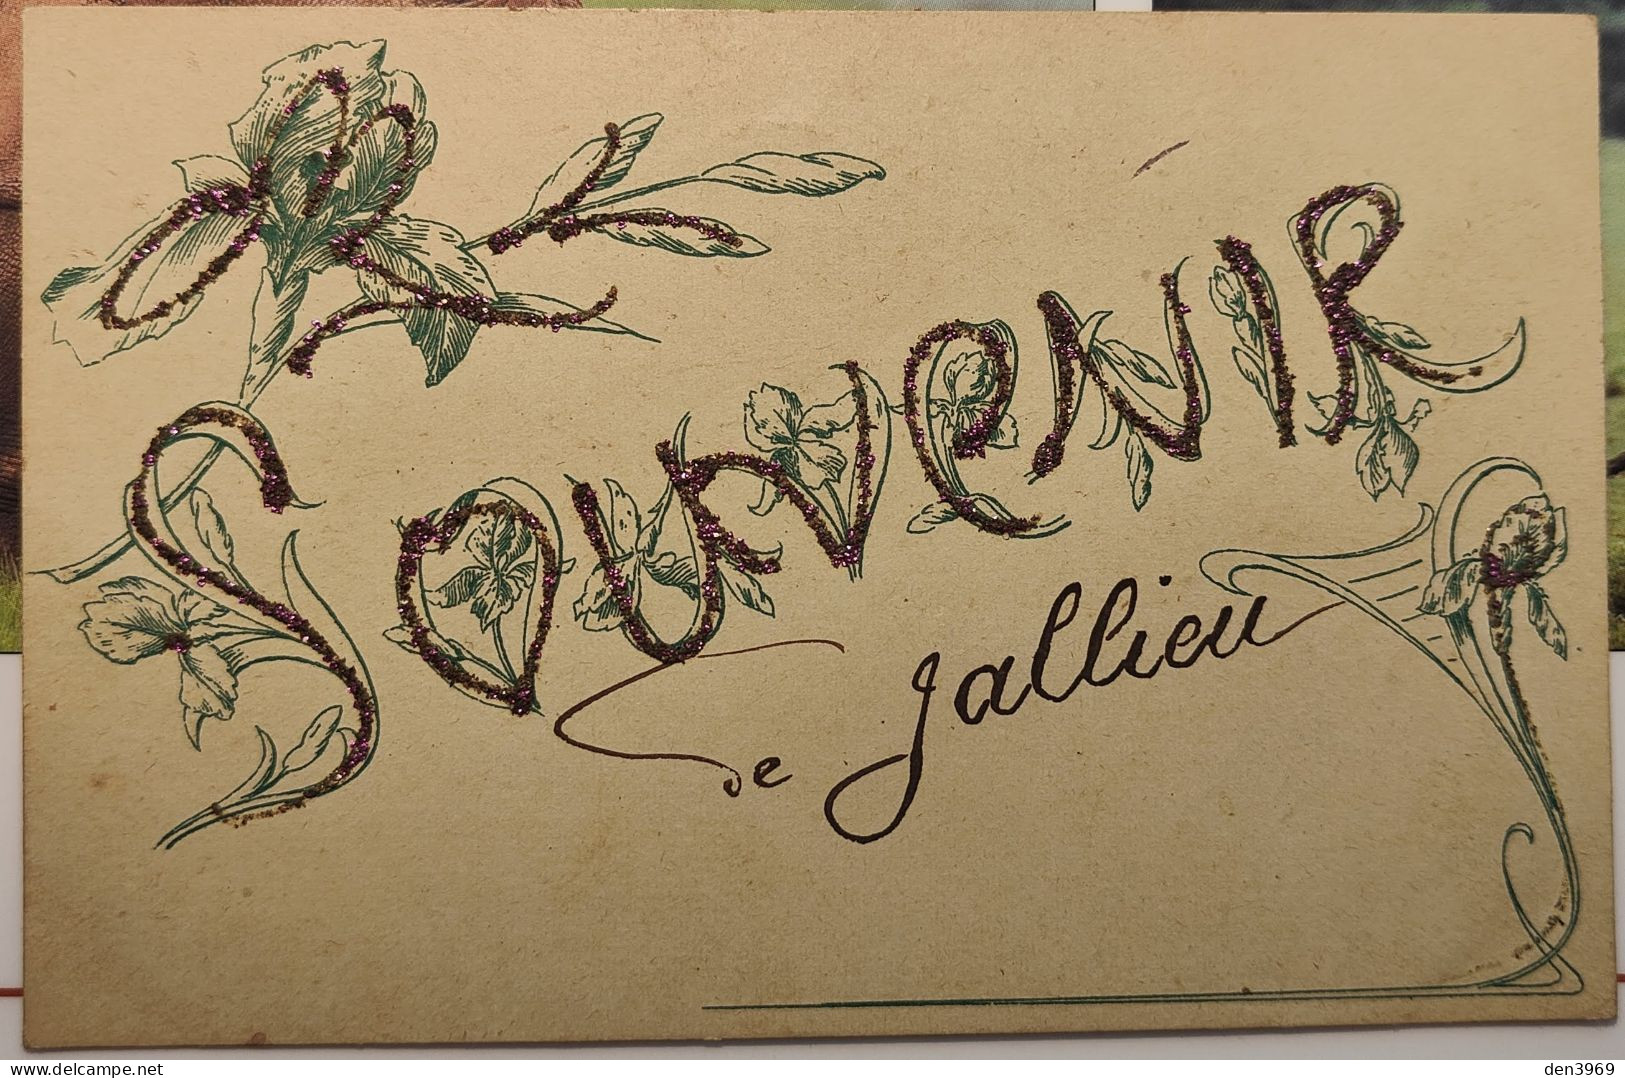 Souvenir De JALLIEU (Isère) Avec Paillettes - Voyagé 1909 (2 Scans) Marie Dupont Modiste 13 Rue De La Gare, Tenay Ain 01 - Jallieu